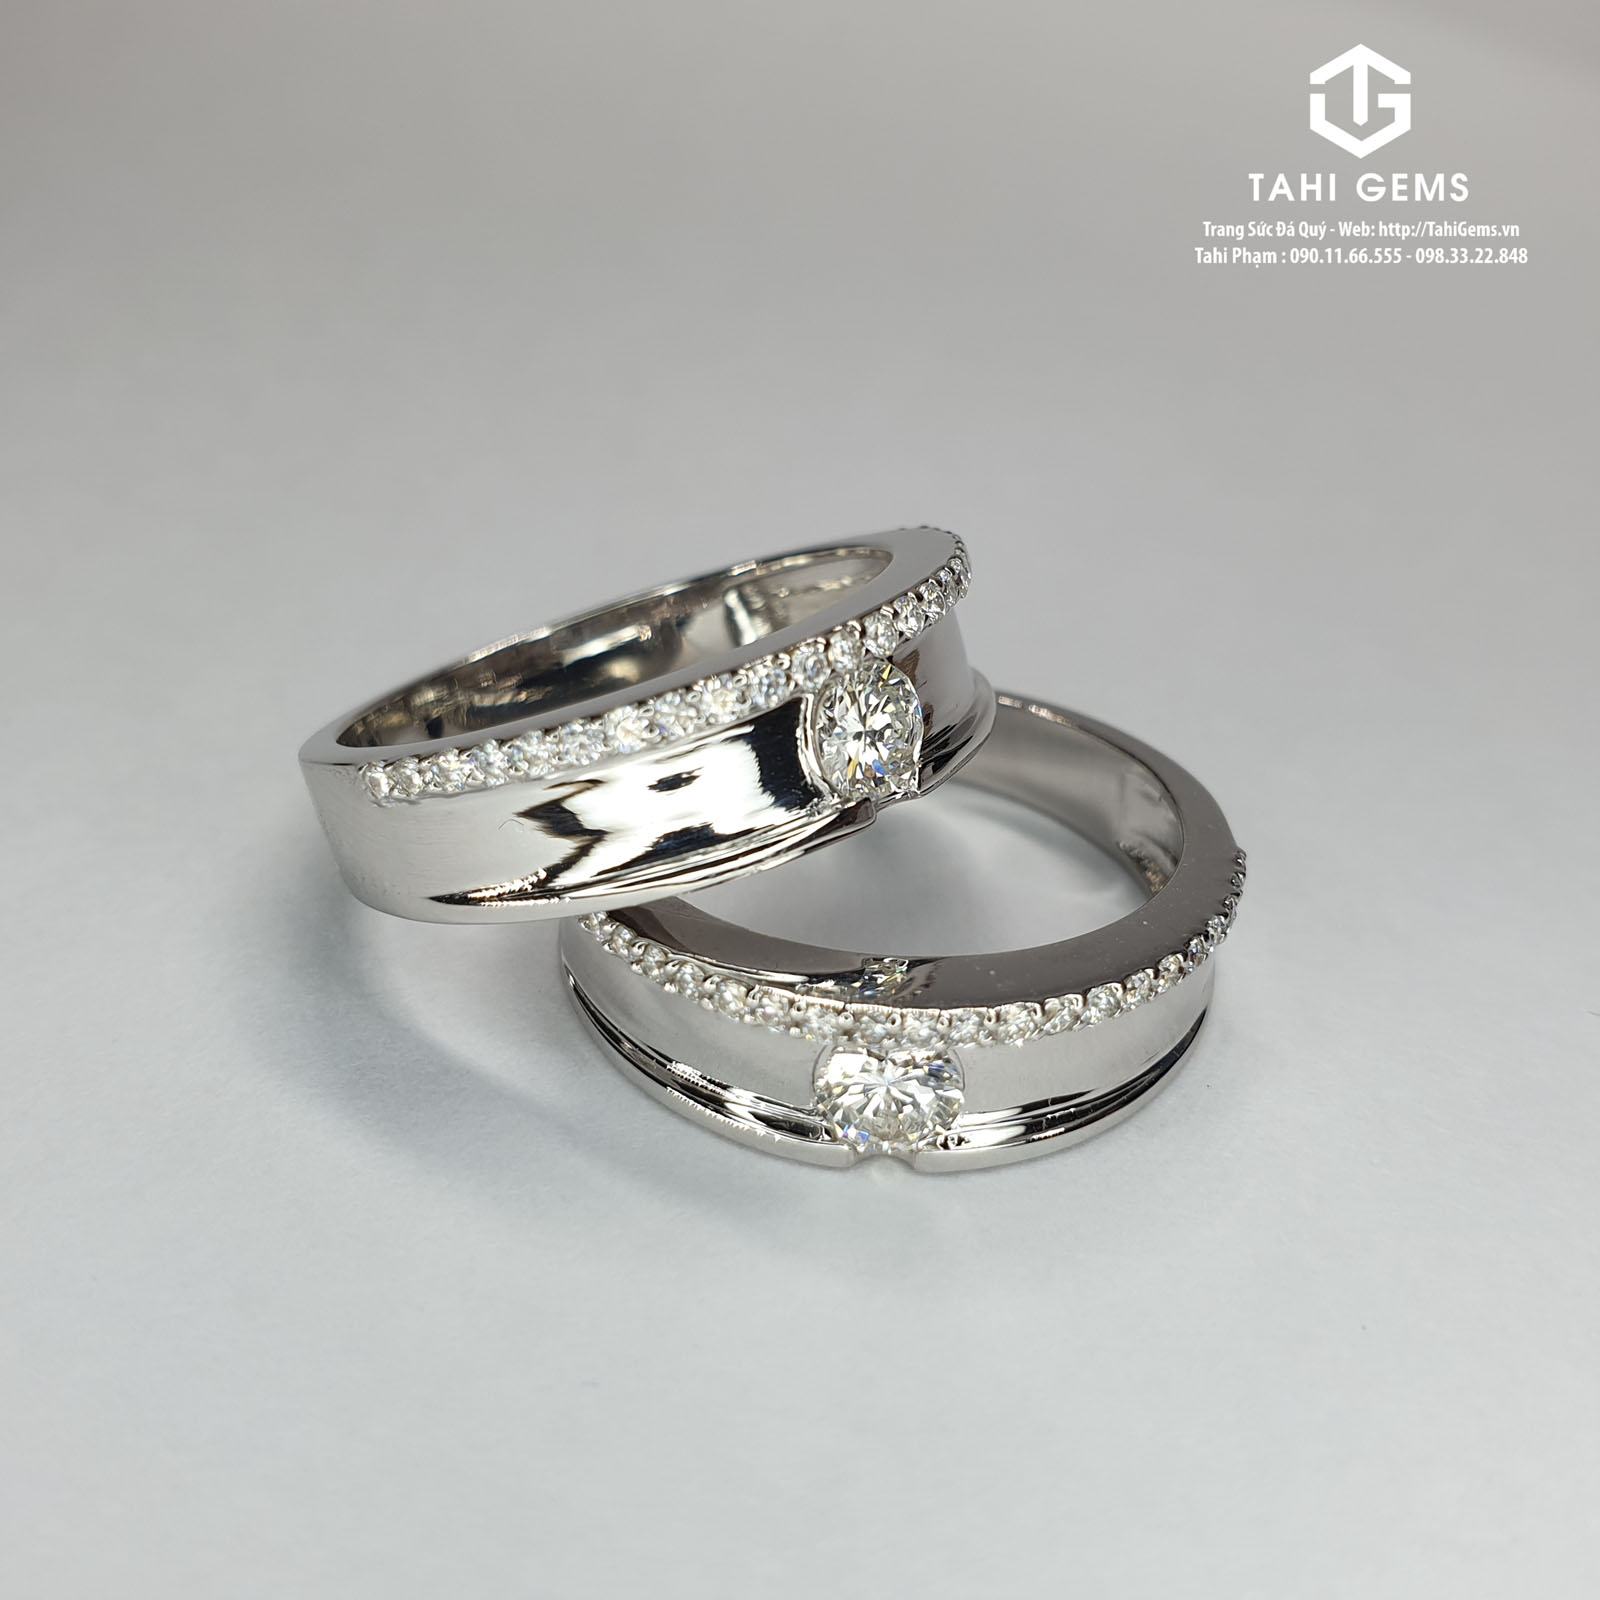 Đạo công giáo đeo nhẫn cưới tay nào?